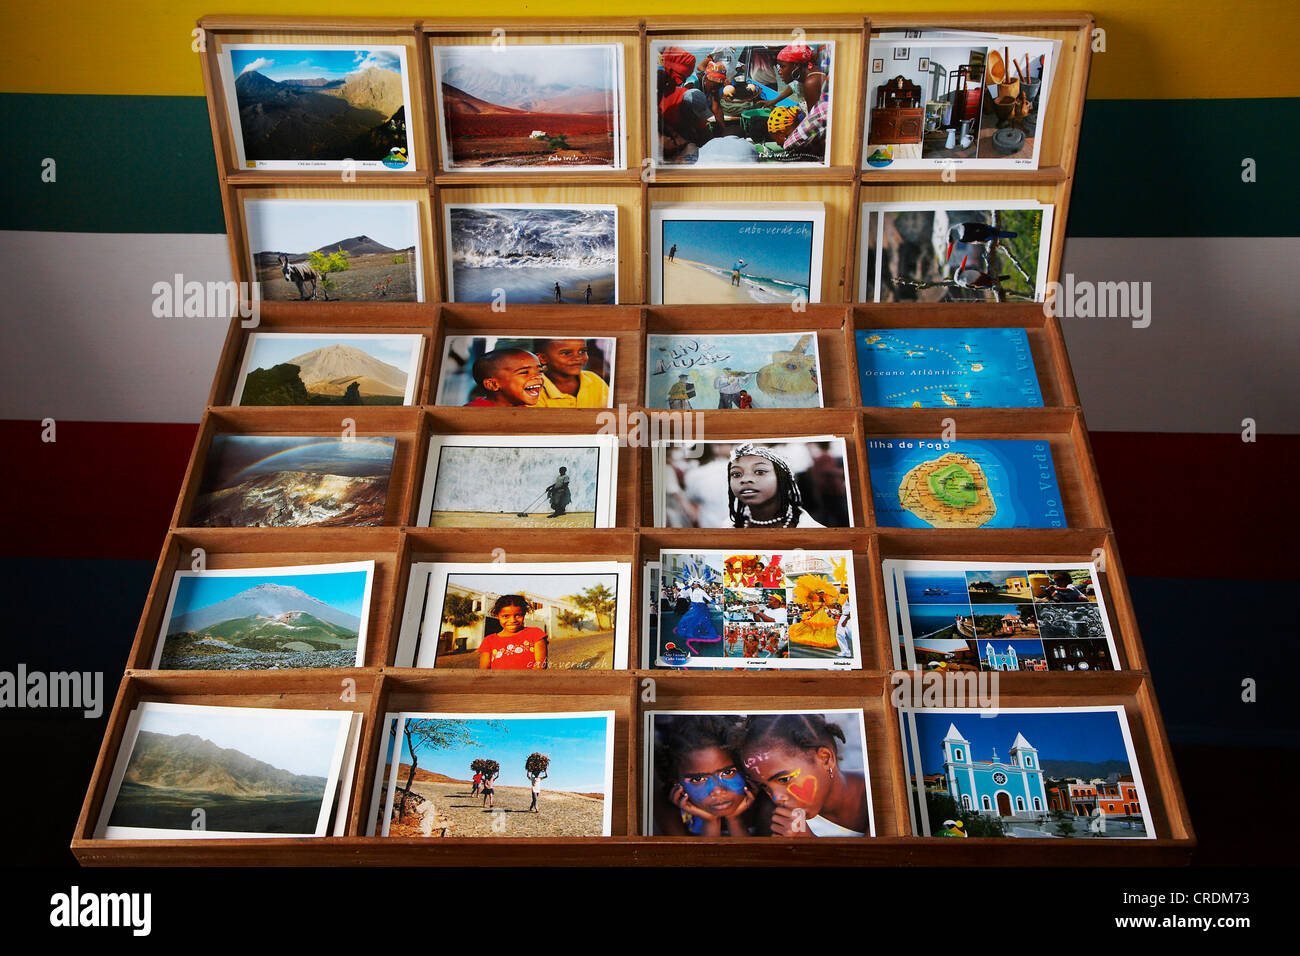 Cartoline, Capo Verde Isole di Capo Verde, Fogo, Sao Filipe Foto Stock